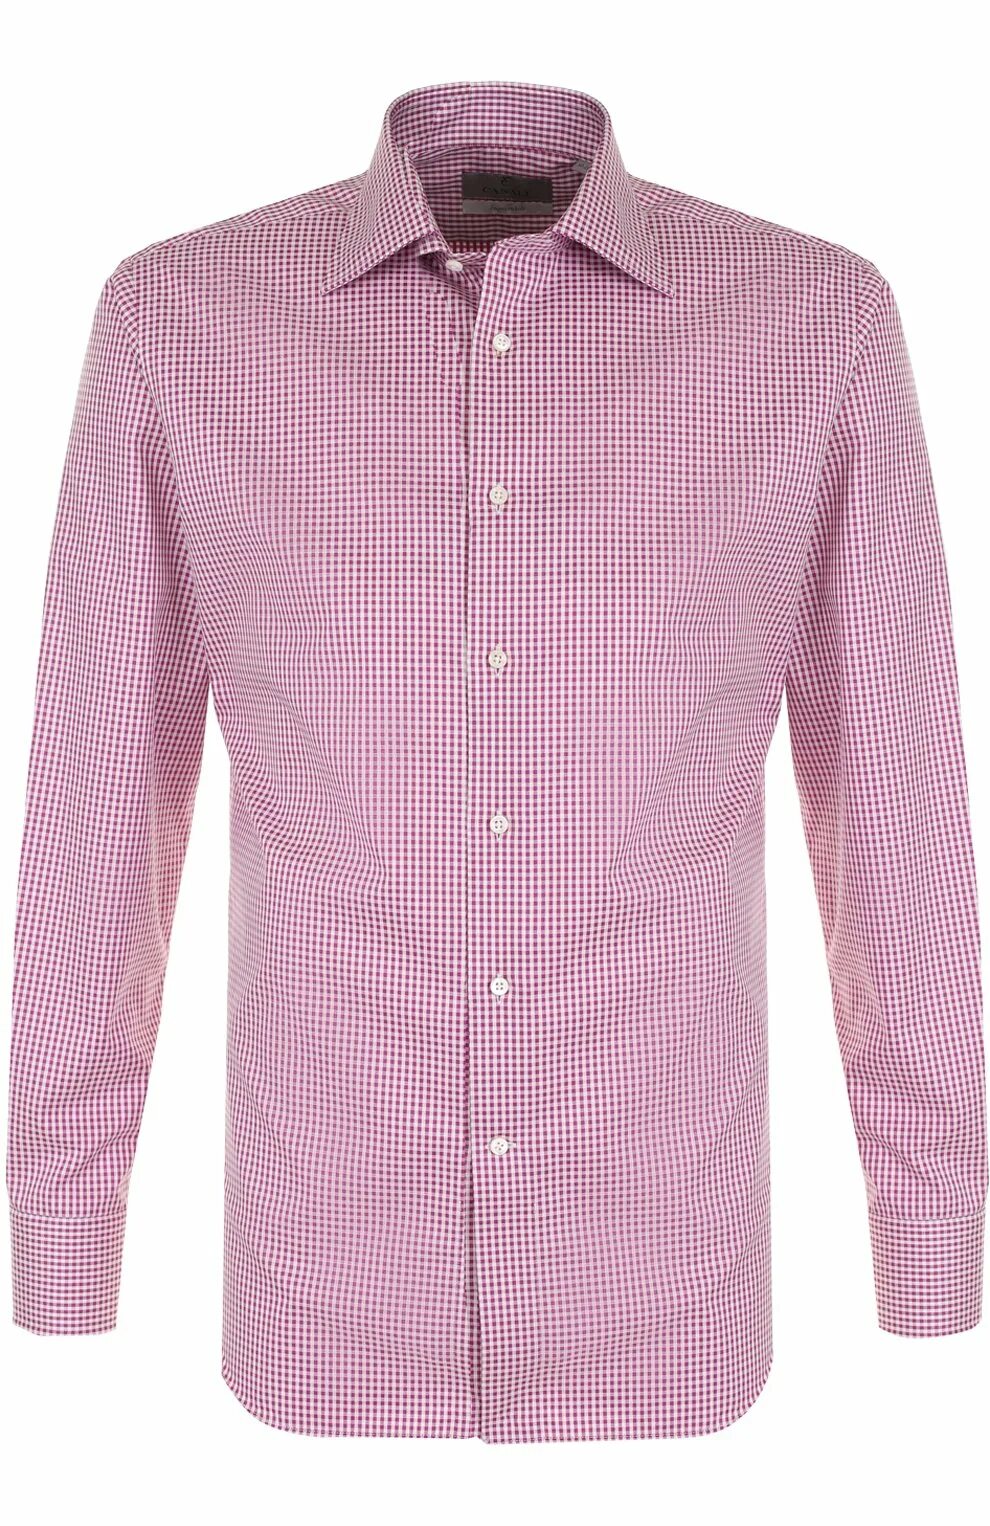 Рубашка цум. Рубашка с воротником Кент. Розовая рубашка. Розовая рубашка мужская. Хлопковая сорочка мужская.